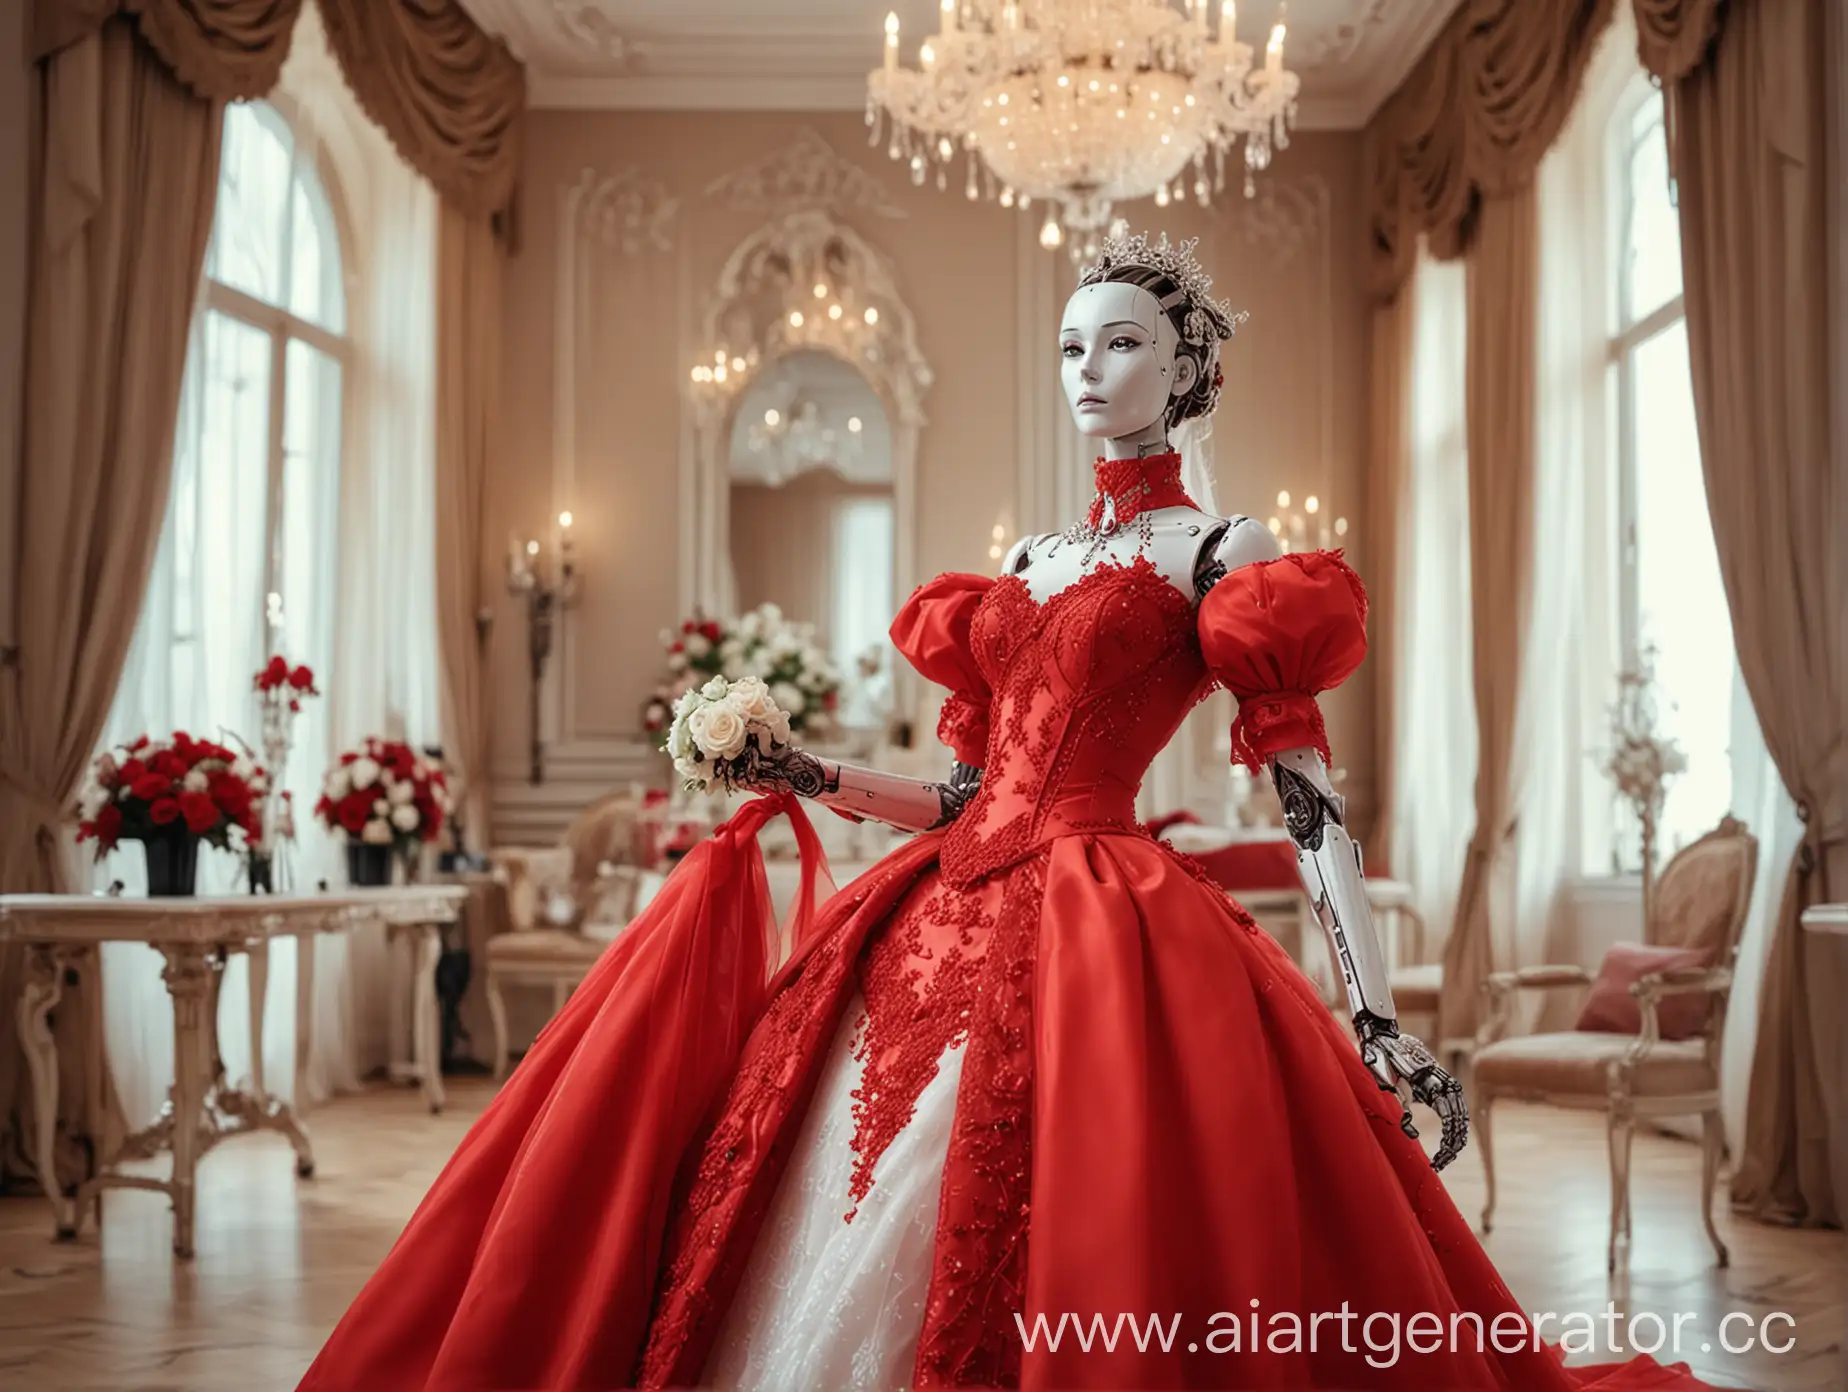 Luxurious-Red-Dress-Robot-Bride-in-Wedding-Salon